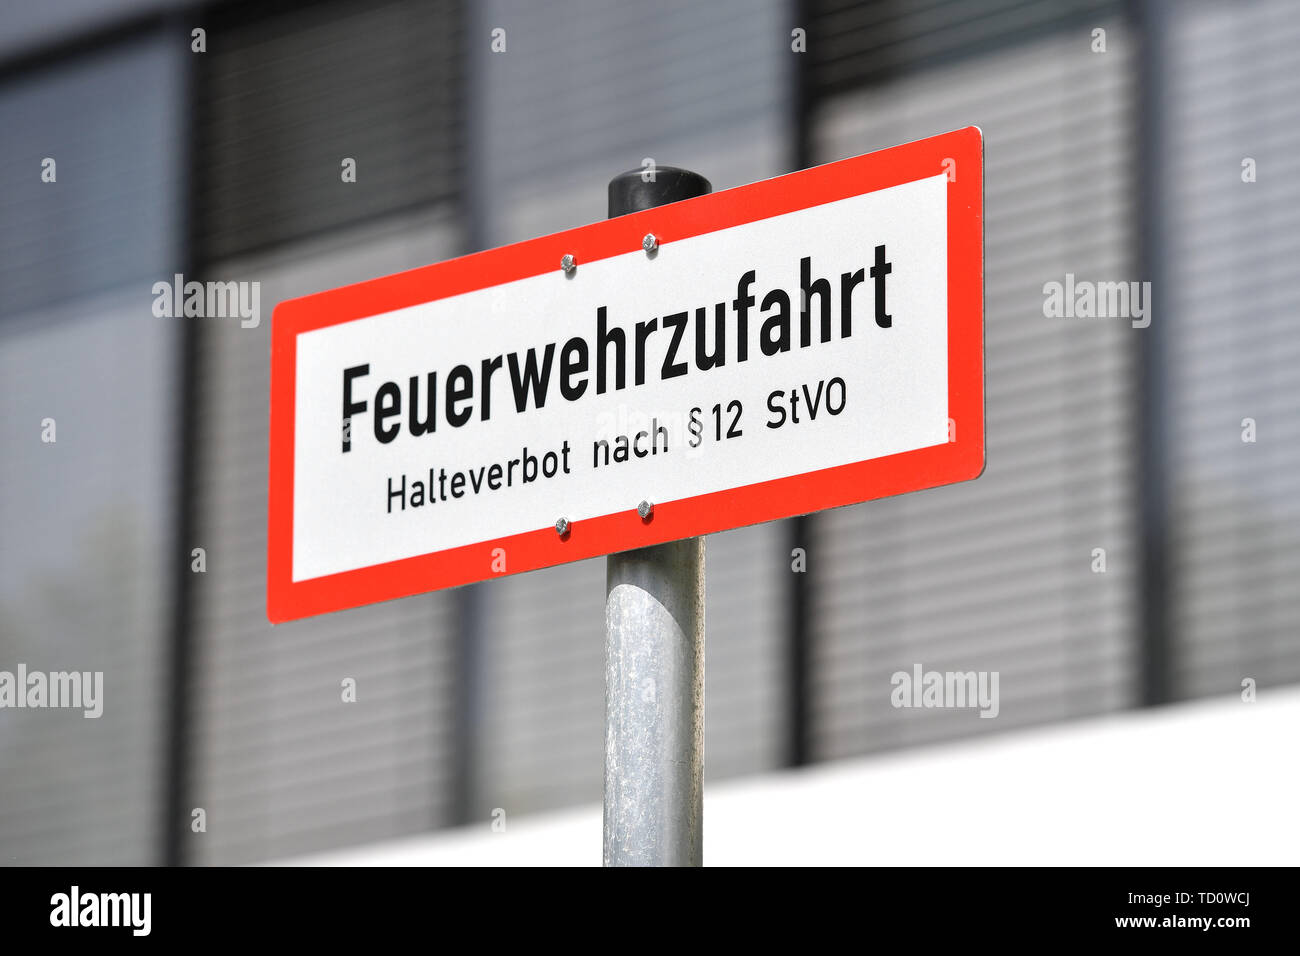 Munich, Alemania. 10 de junio de 2019. La protección contra incendios.Verbostschild | Uso de crédito en todo el mundo: dpa/Alamy Live News Foto de stock